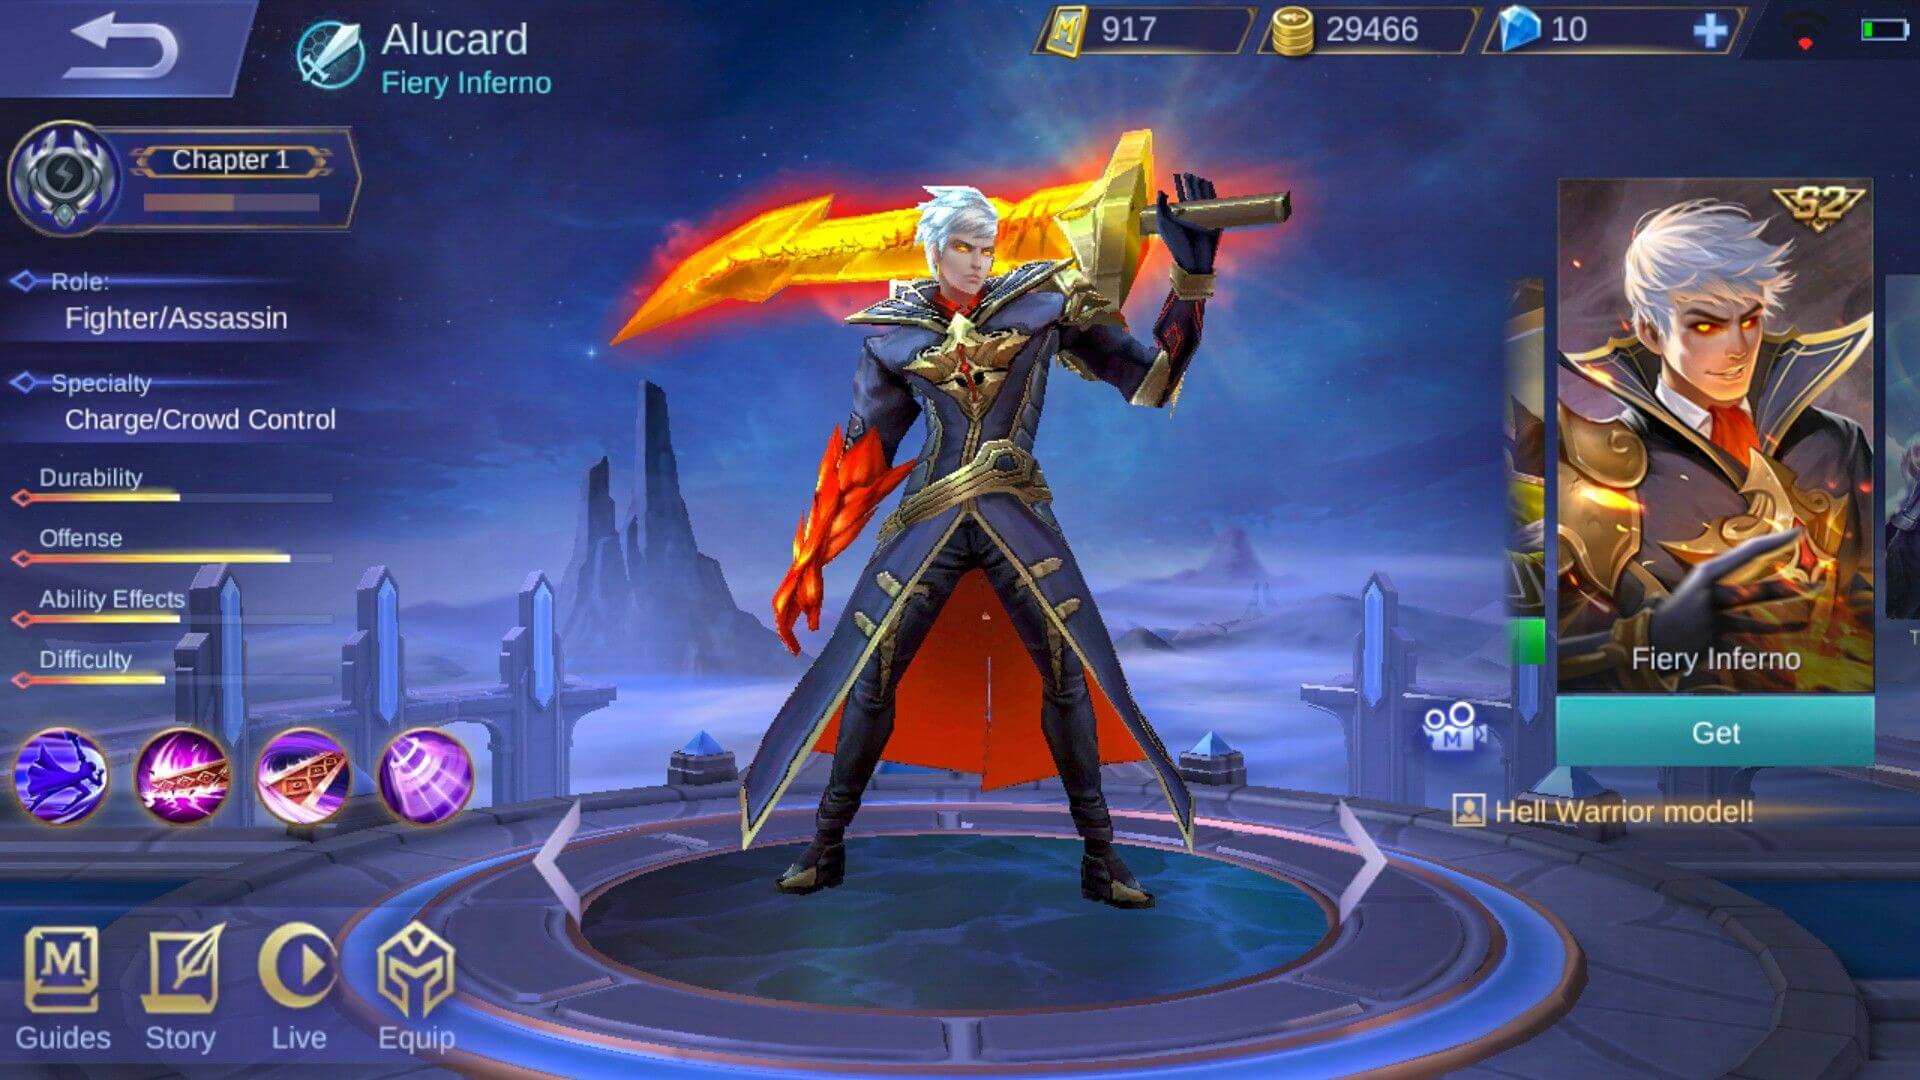 Alucard Fiery Inferno skin